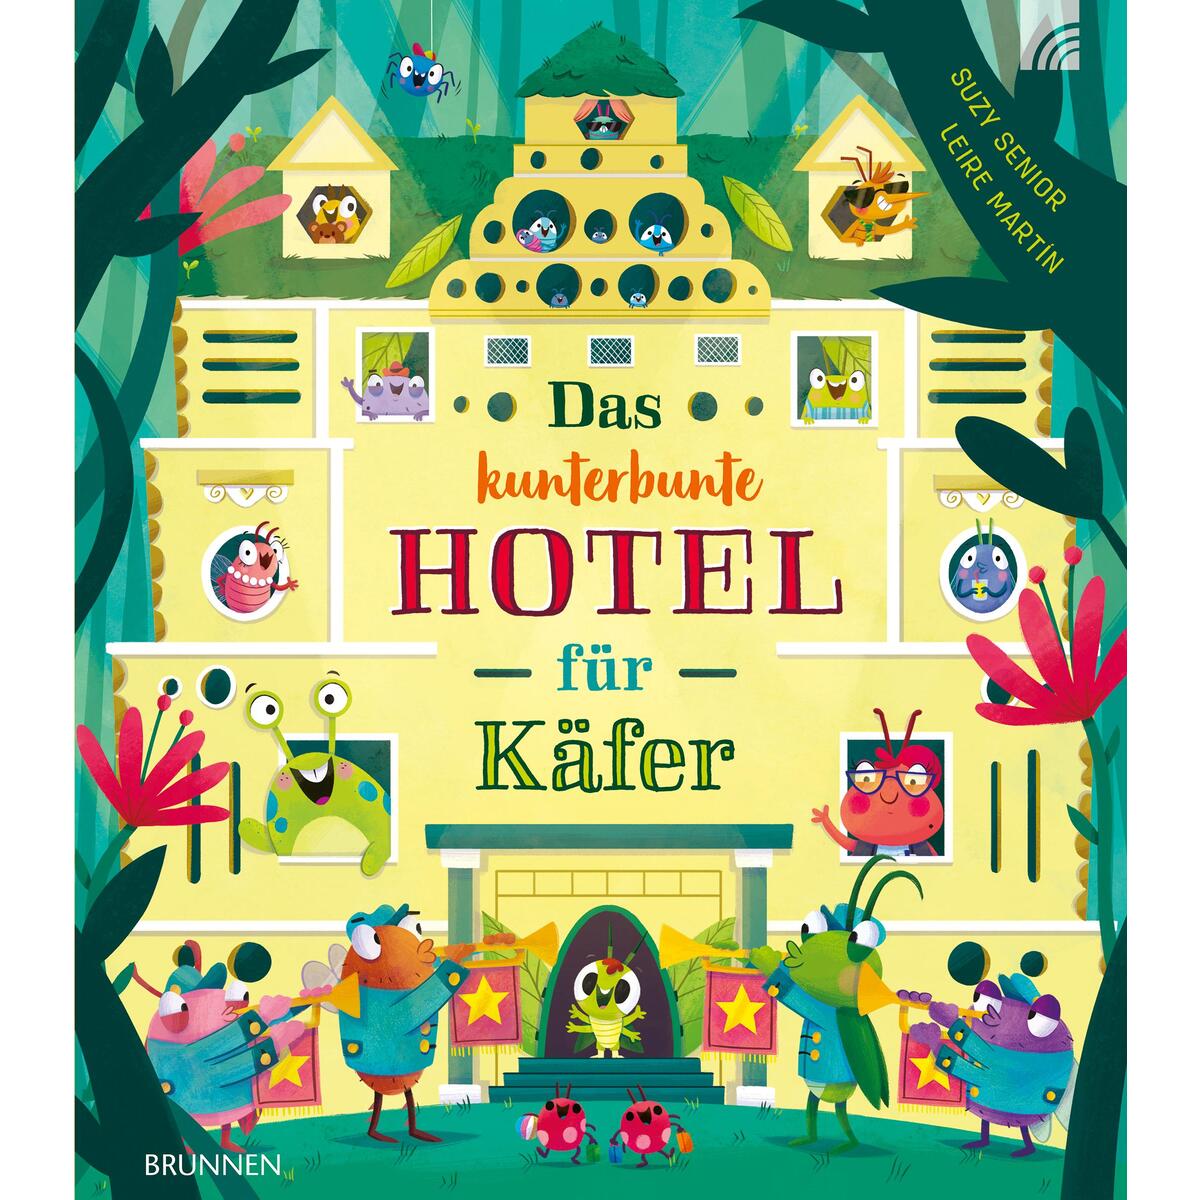 Das kunterbunte Hotel für Käfer von Brunnen-Verlag GmbH